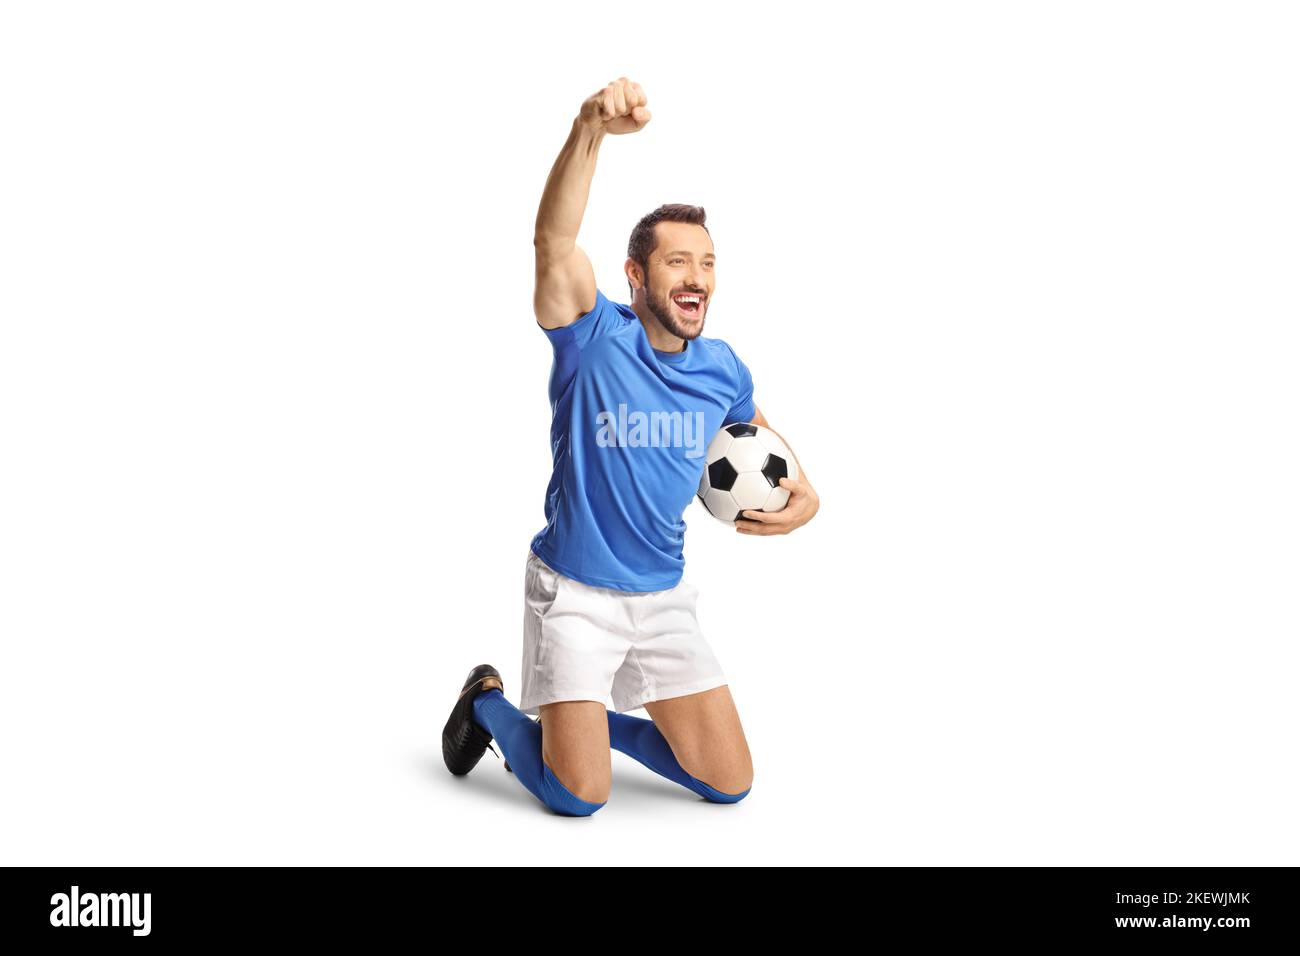 Eccitato fotball giocatore che tiene una palla e inginocchiarsi isolato su sfondo bianco Foto Stock